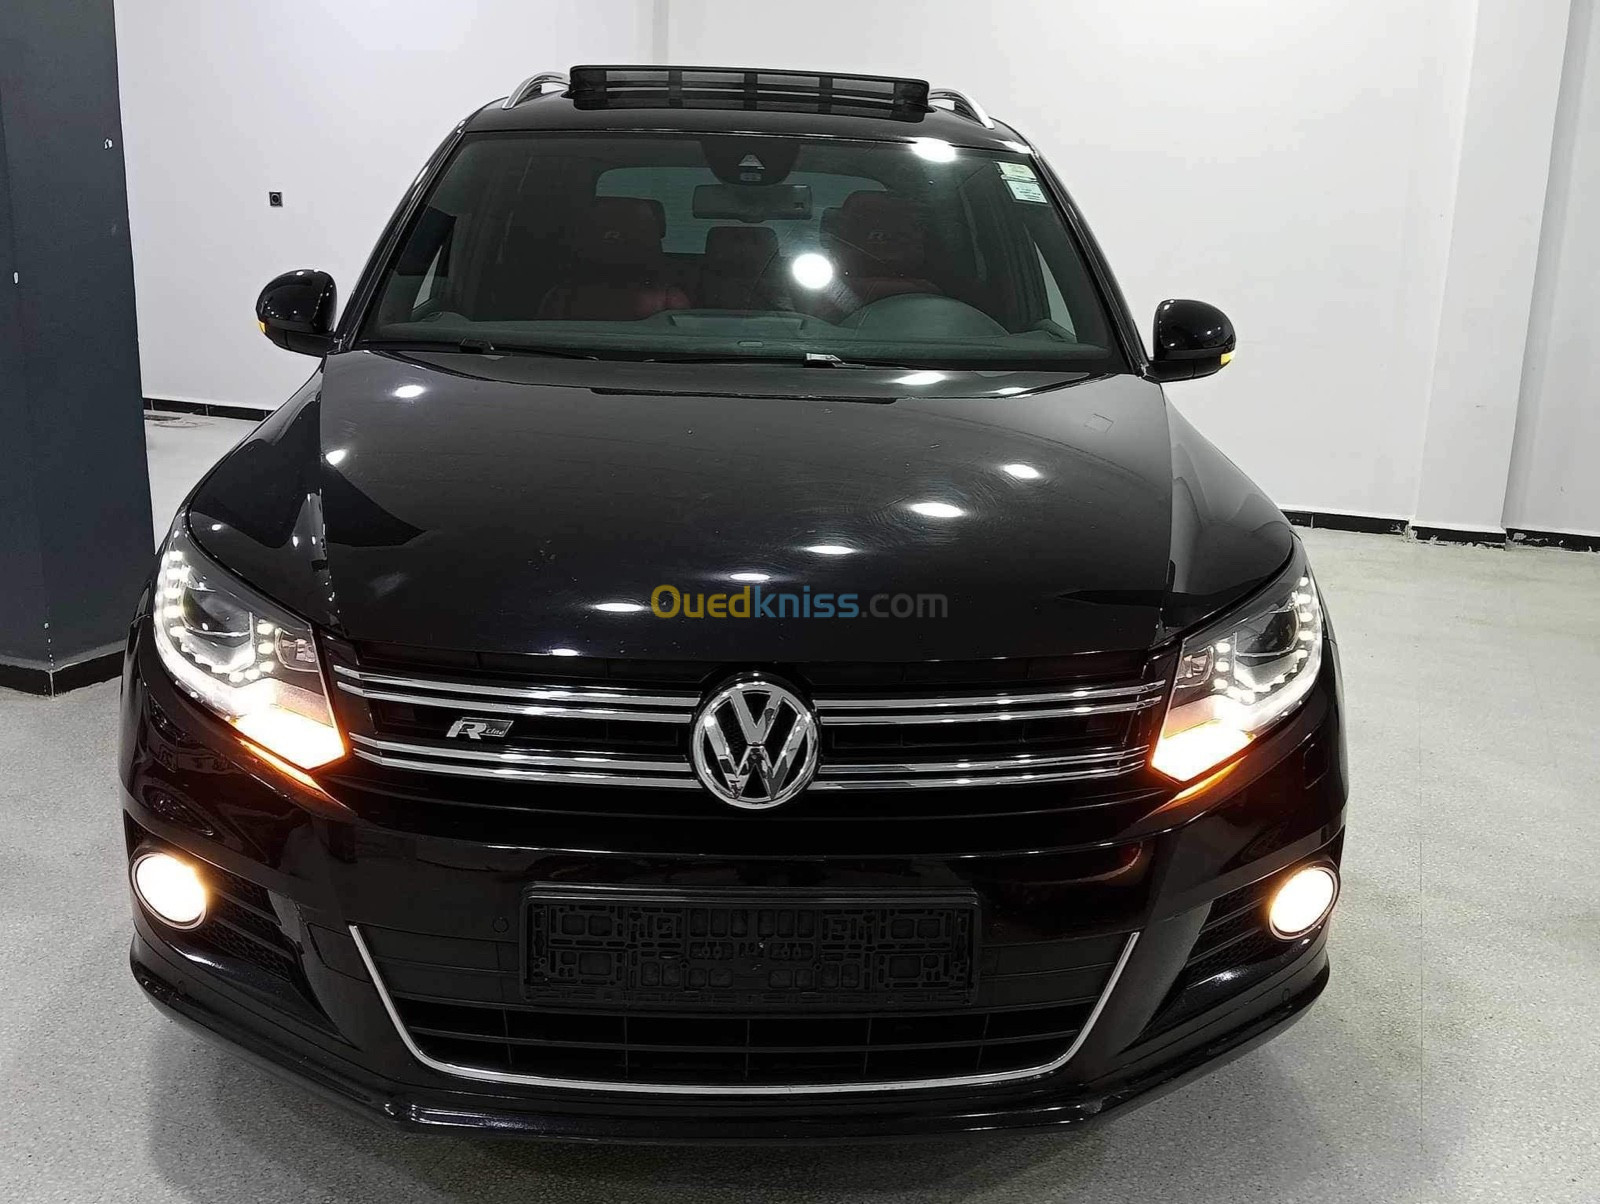 Volkswagen Tiguan 2015 R Line